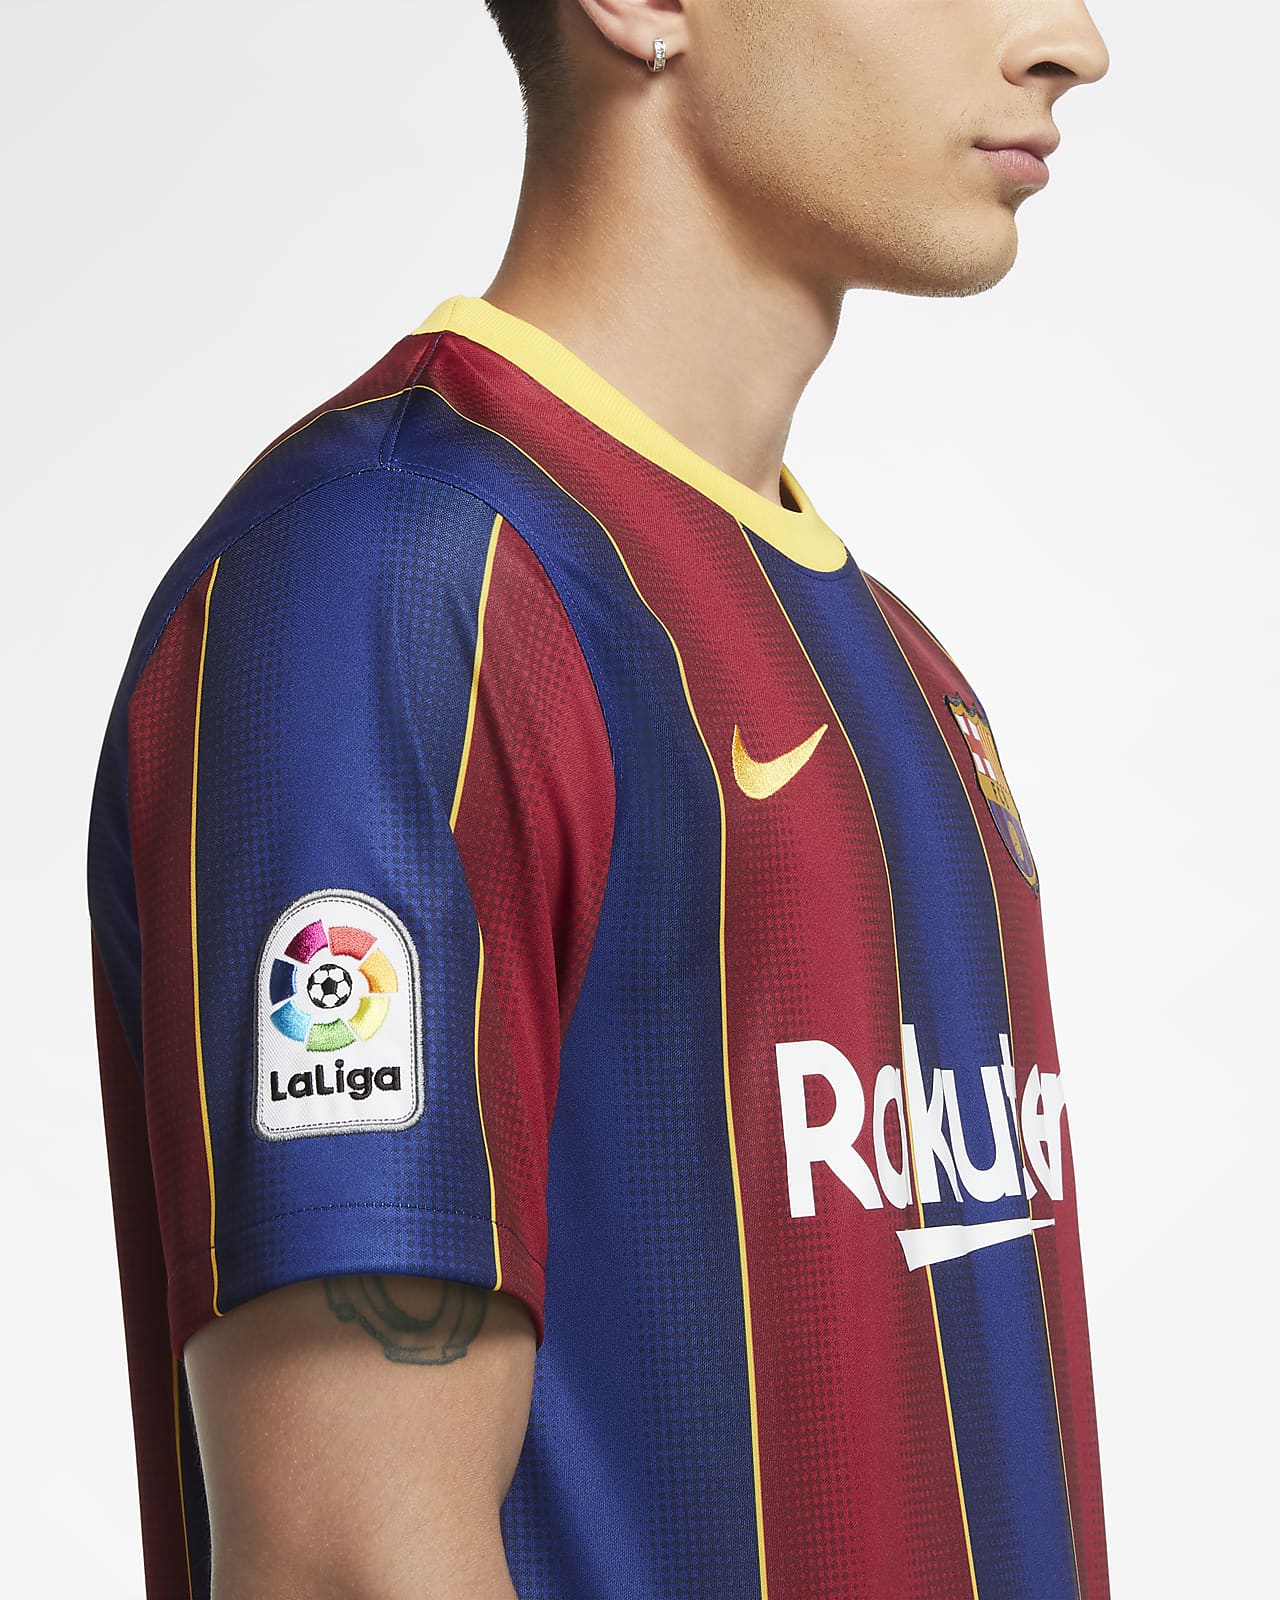 Nike公式 Fc バルセロナ 21 スタジアム ホーム メンズ サッカーユニフォーム オンラインストア 通販サイト